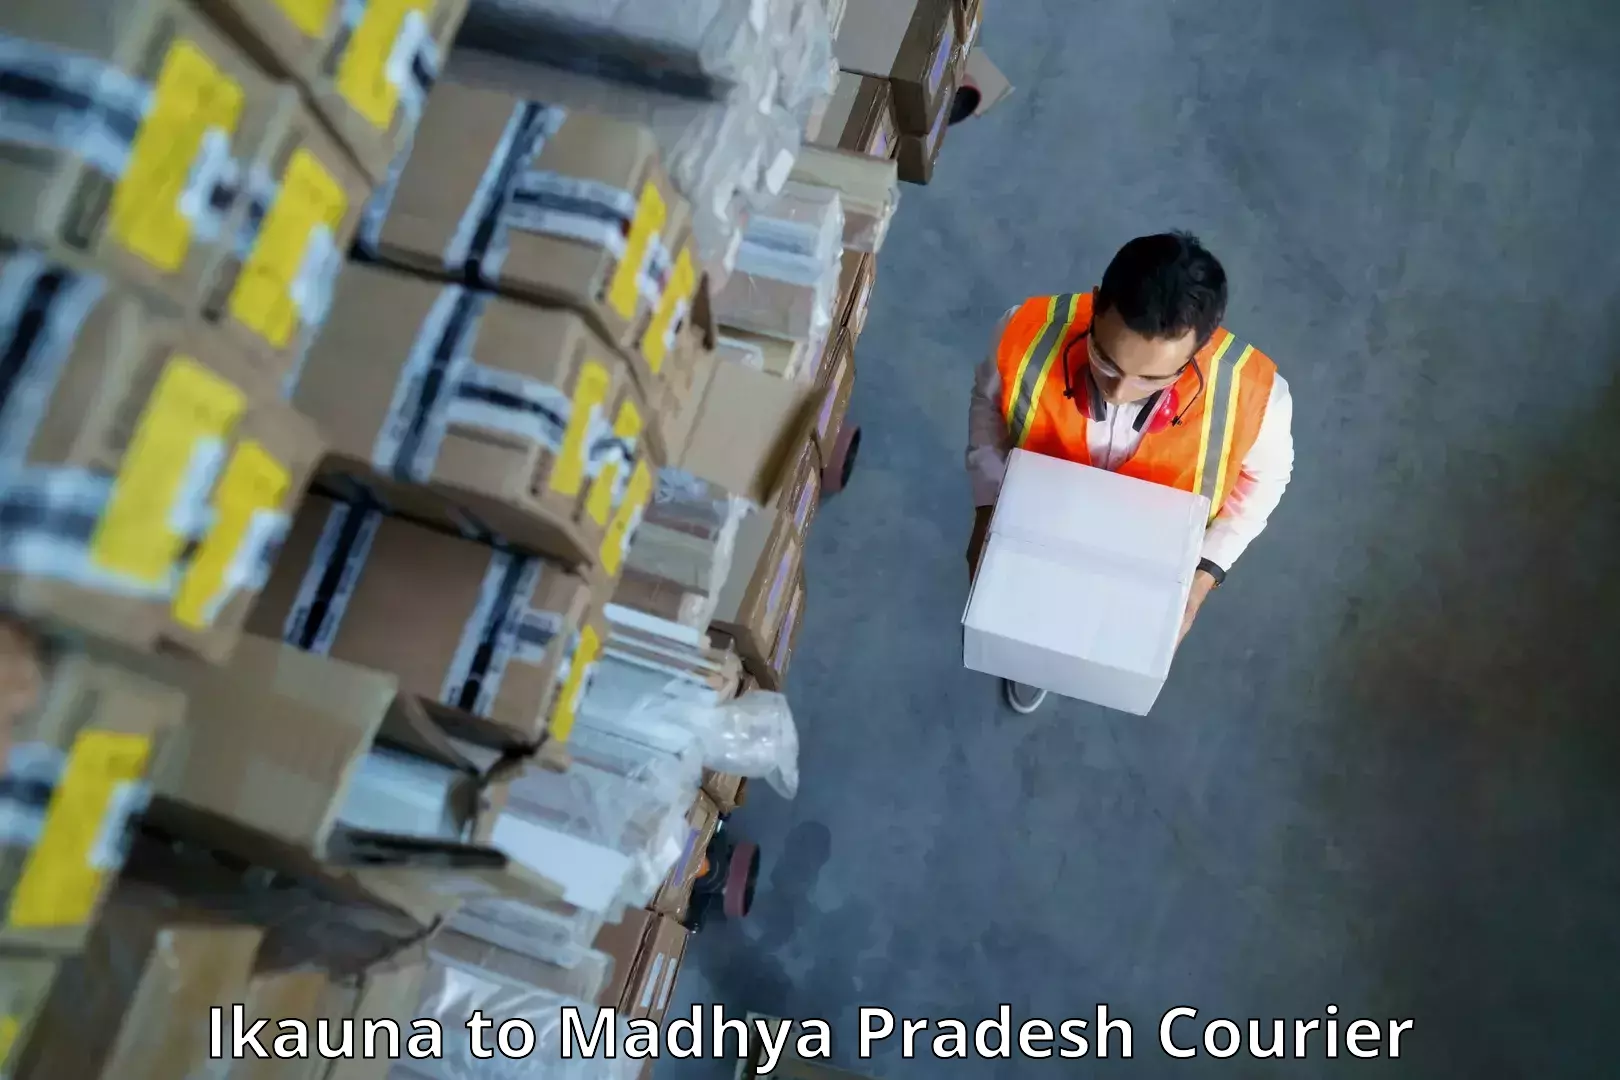 Efficient parcel service Ikauna to Dewas